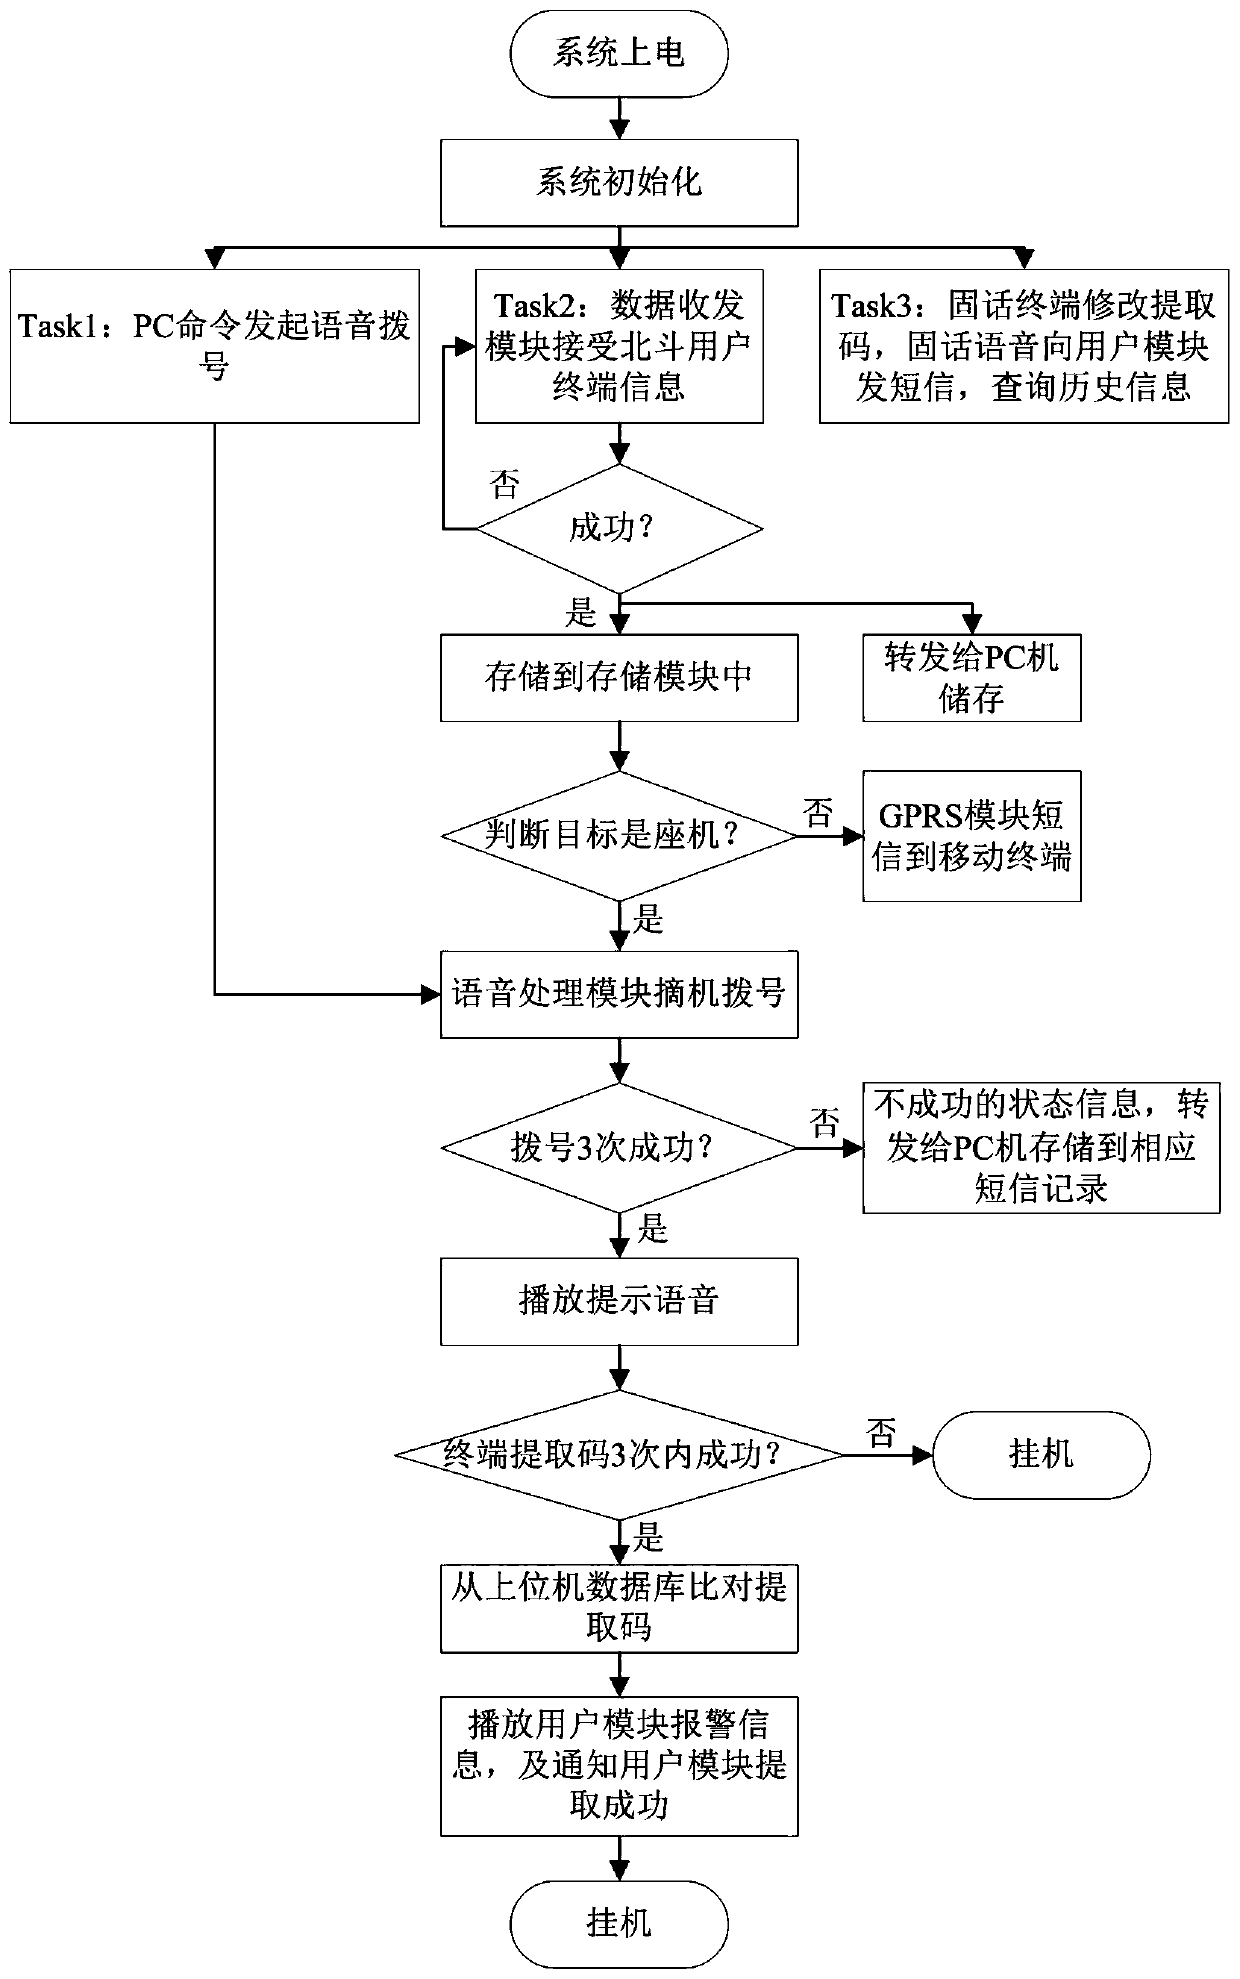 Beidou telephone gateway communication method and system